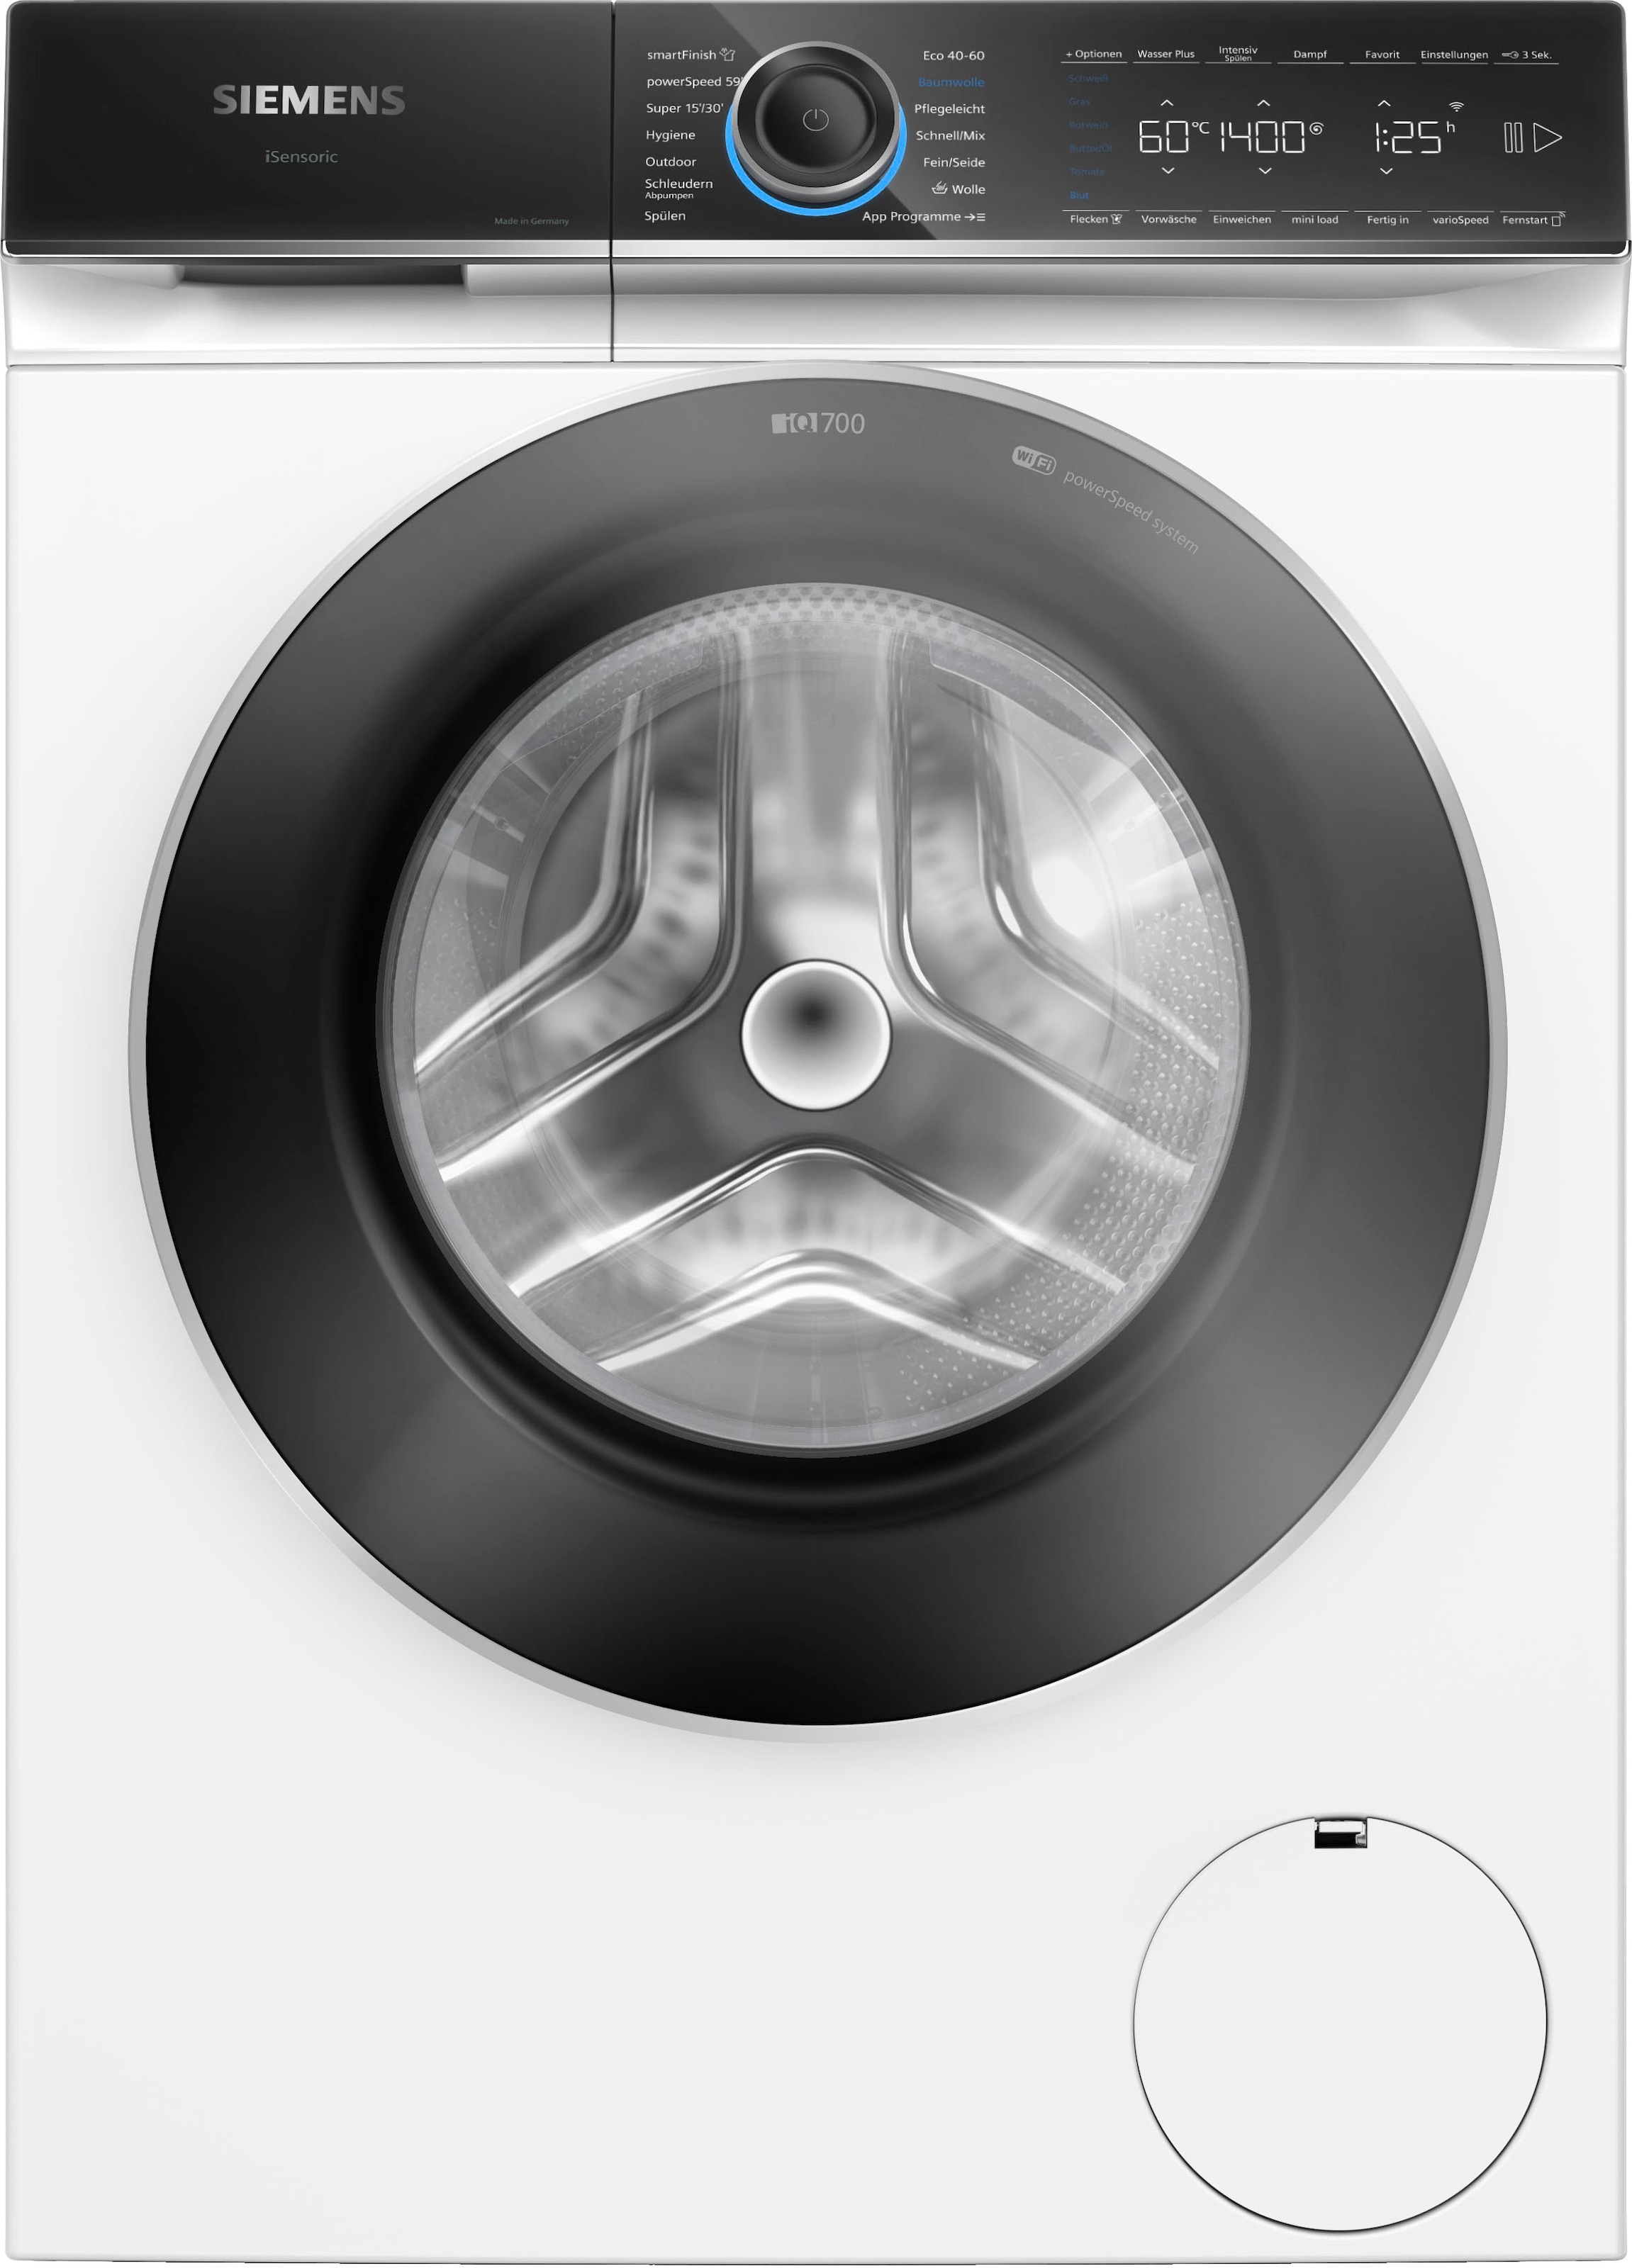 SIEMENS Waschmaschine kg, smartFinish dank OTTO Shop WG44B2040, – im »WG44B2040«, glättet 9 sämtliche U/min, 1400 Dampf Knitterfalten Online